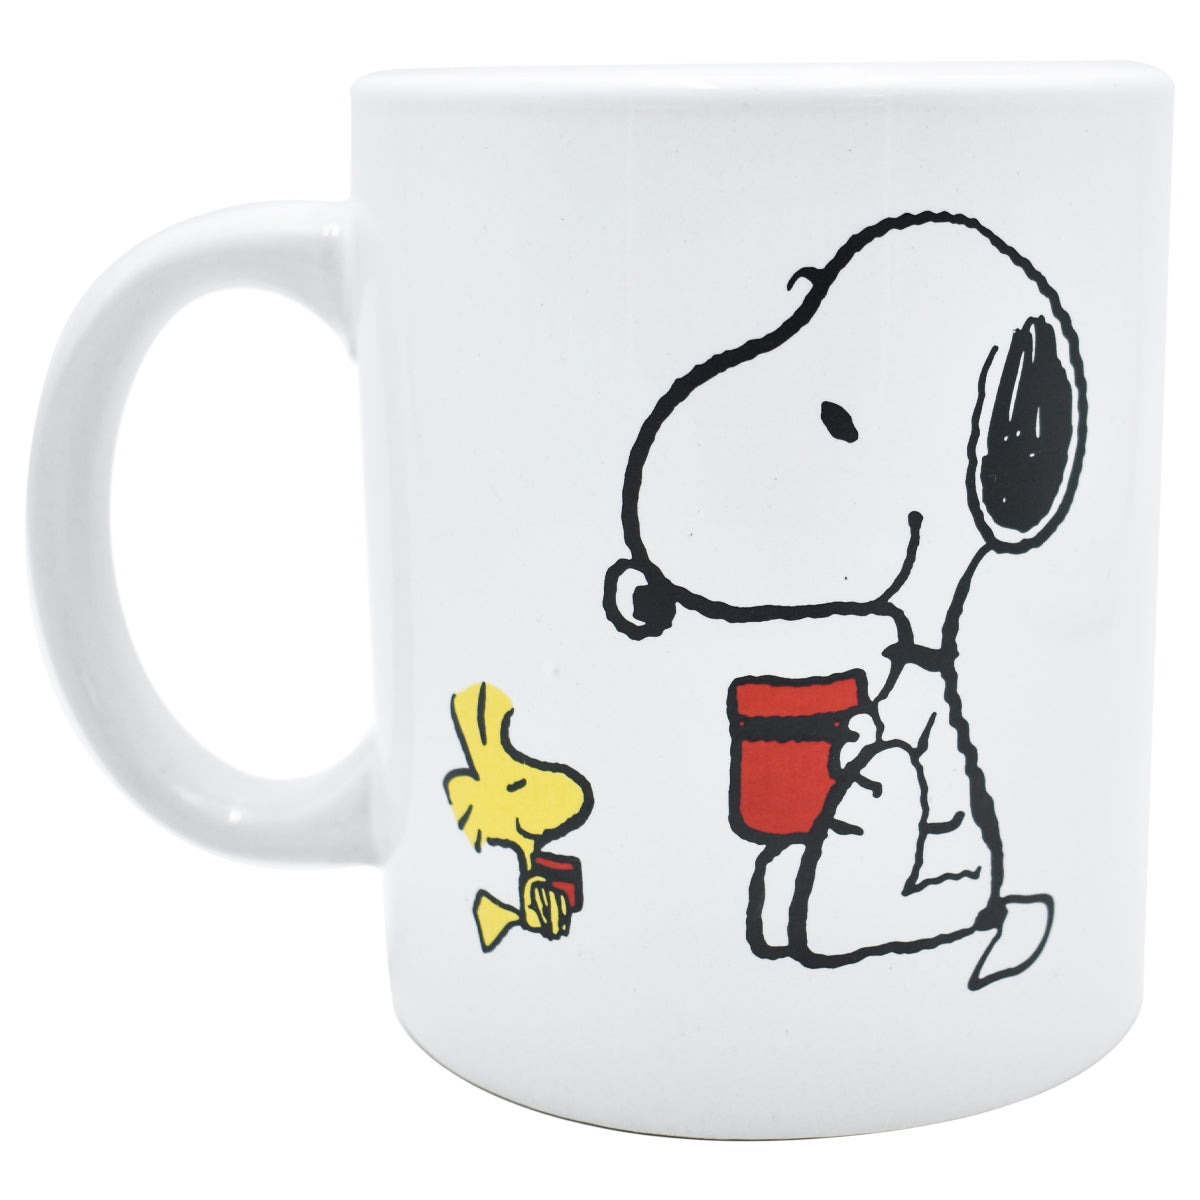 Taza de Snoopy, regalo para ella, regalo de cumpleaños, regalo de amigo,  cacahuetes Snoopy amigo perfecto taza de té de café cerámica regaloCMUG202  -  México